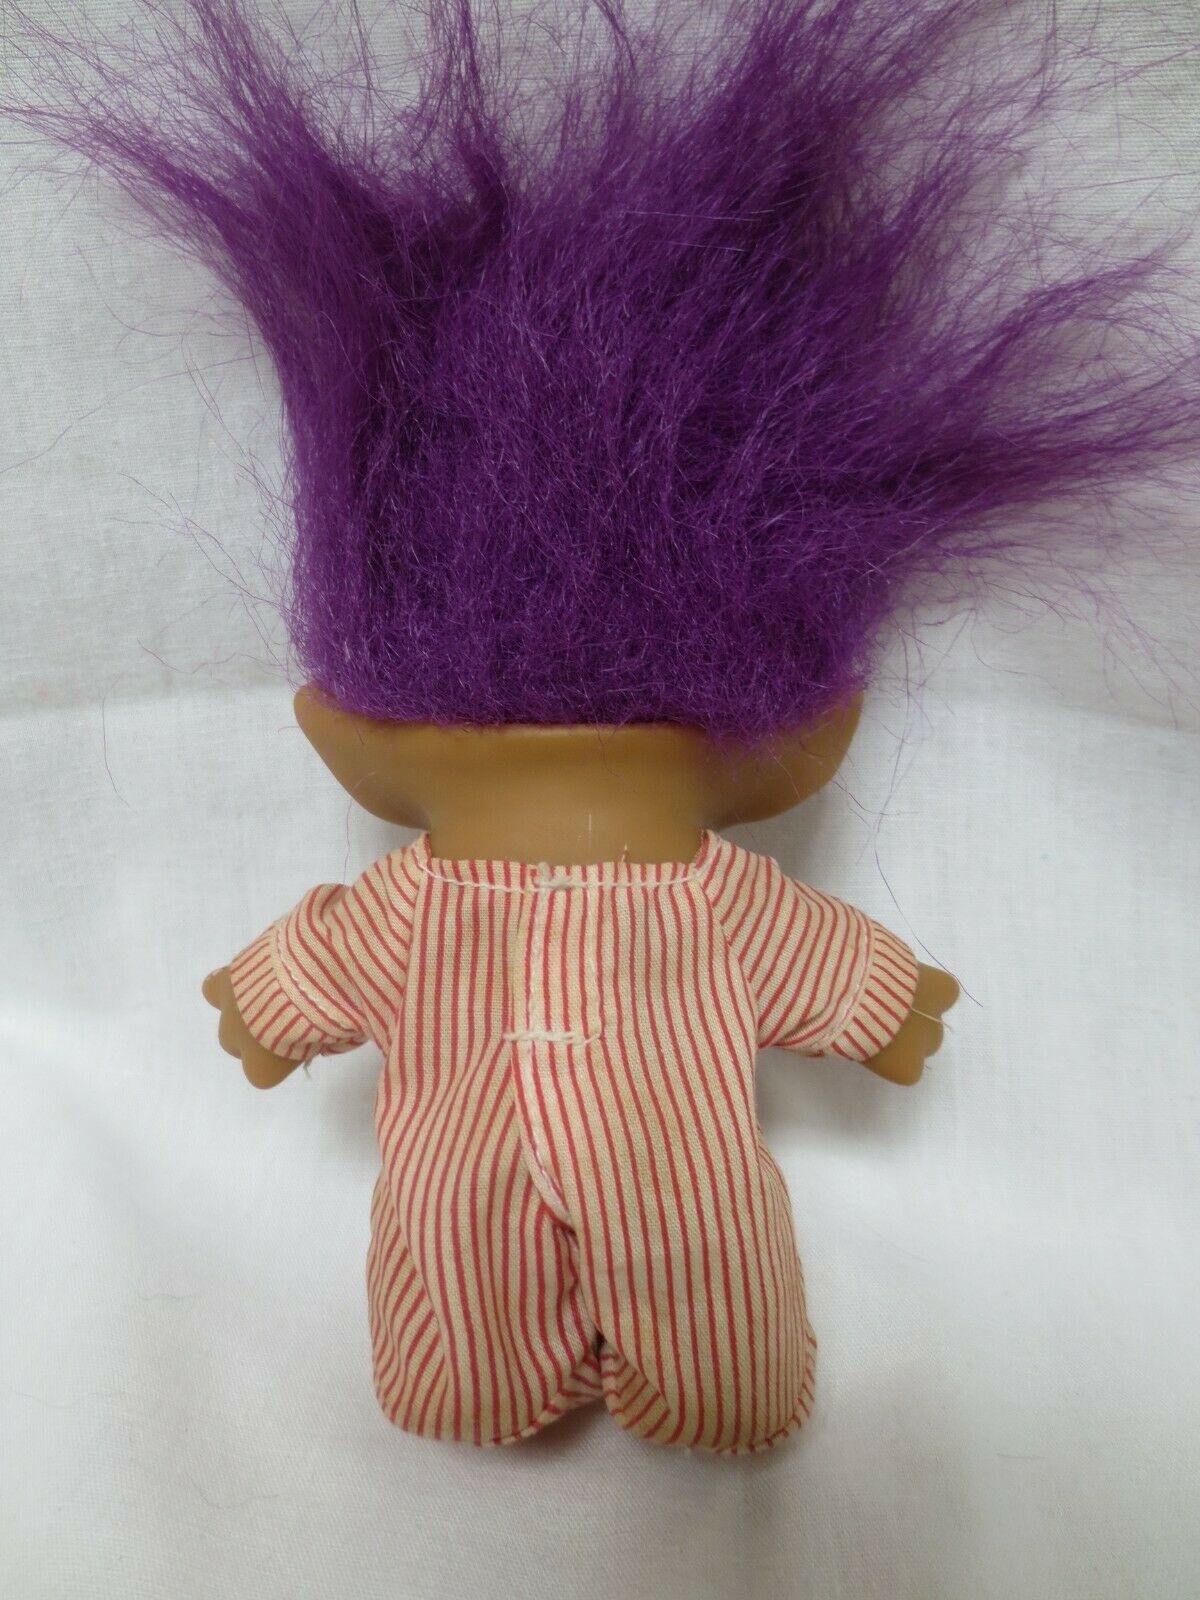 RUSS "Super Grad" Purple Hair Blue Robe Troll Doll 3" 